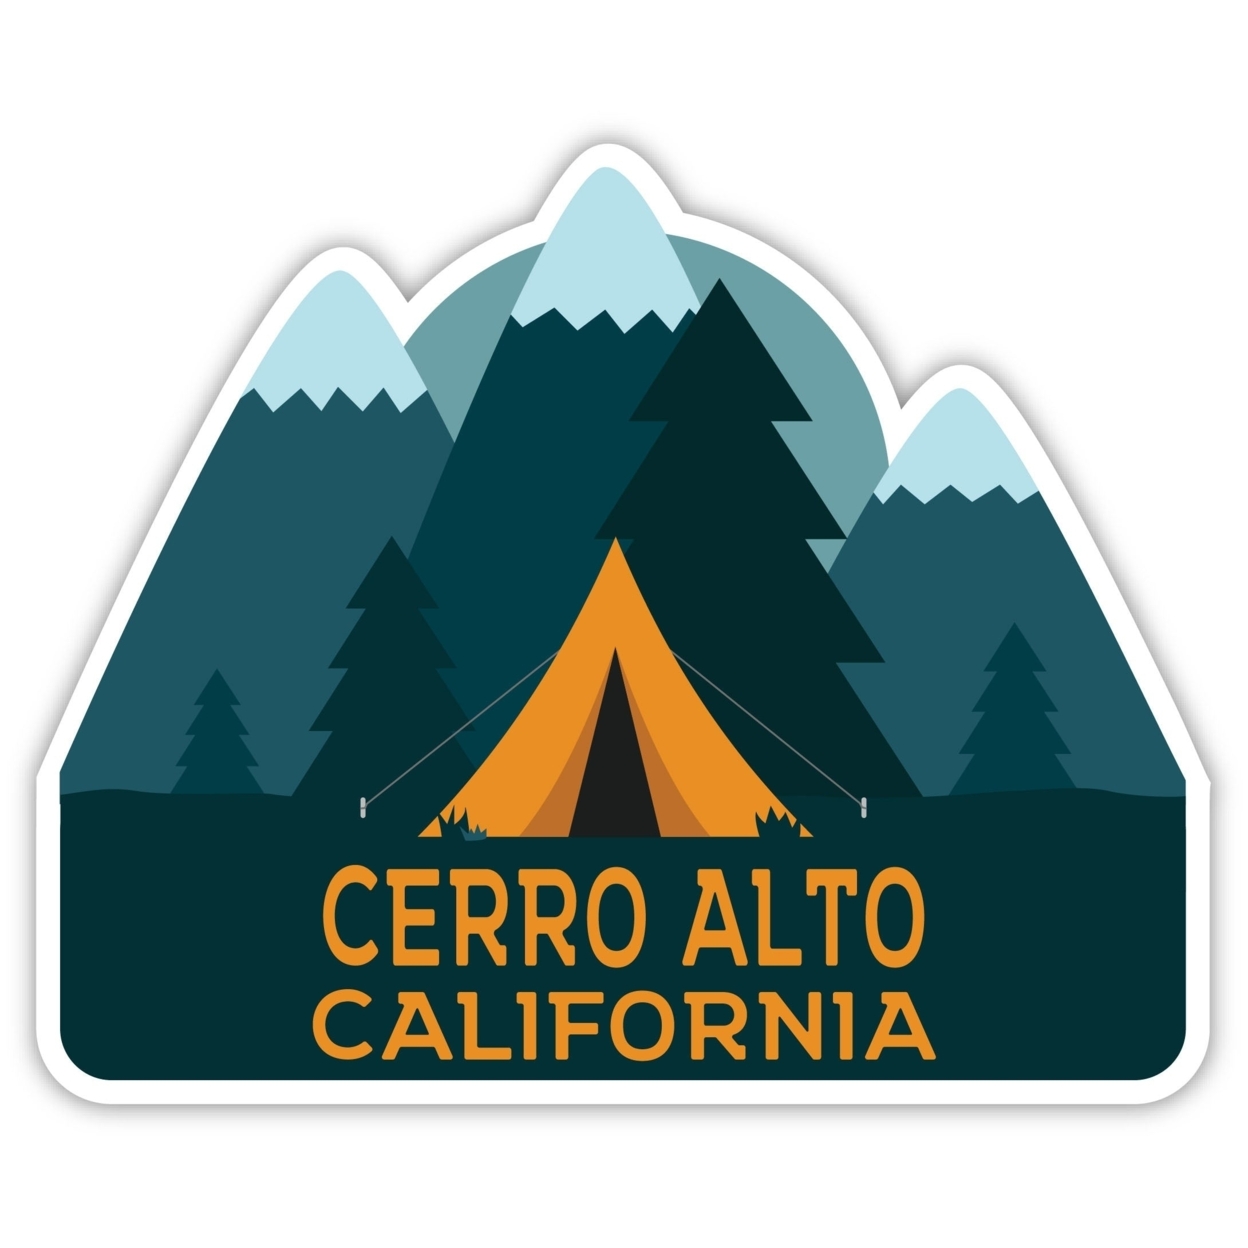 Cerro Alto California Souvenir Decorative Stickers (Choose Theme And Size) - Single Unit, 10-Inch, Tent